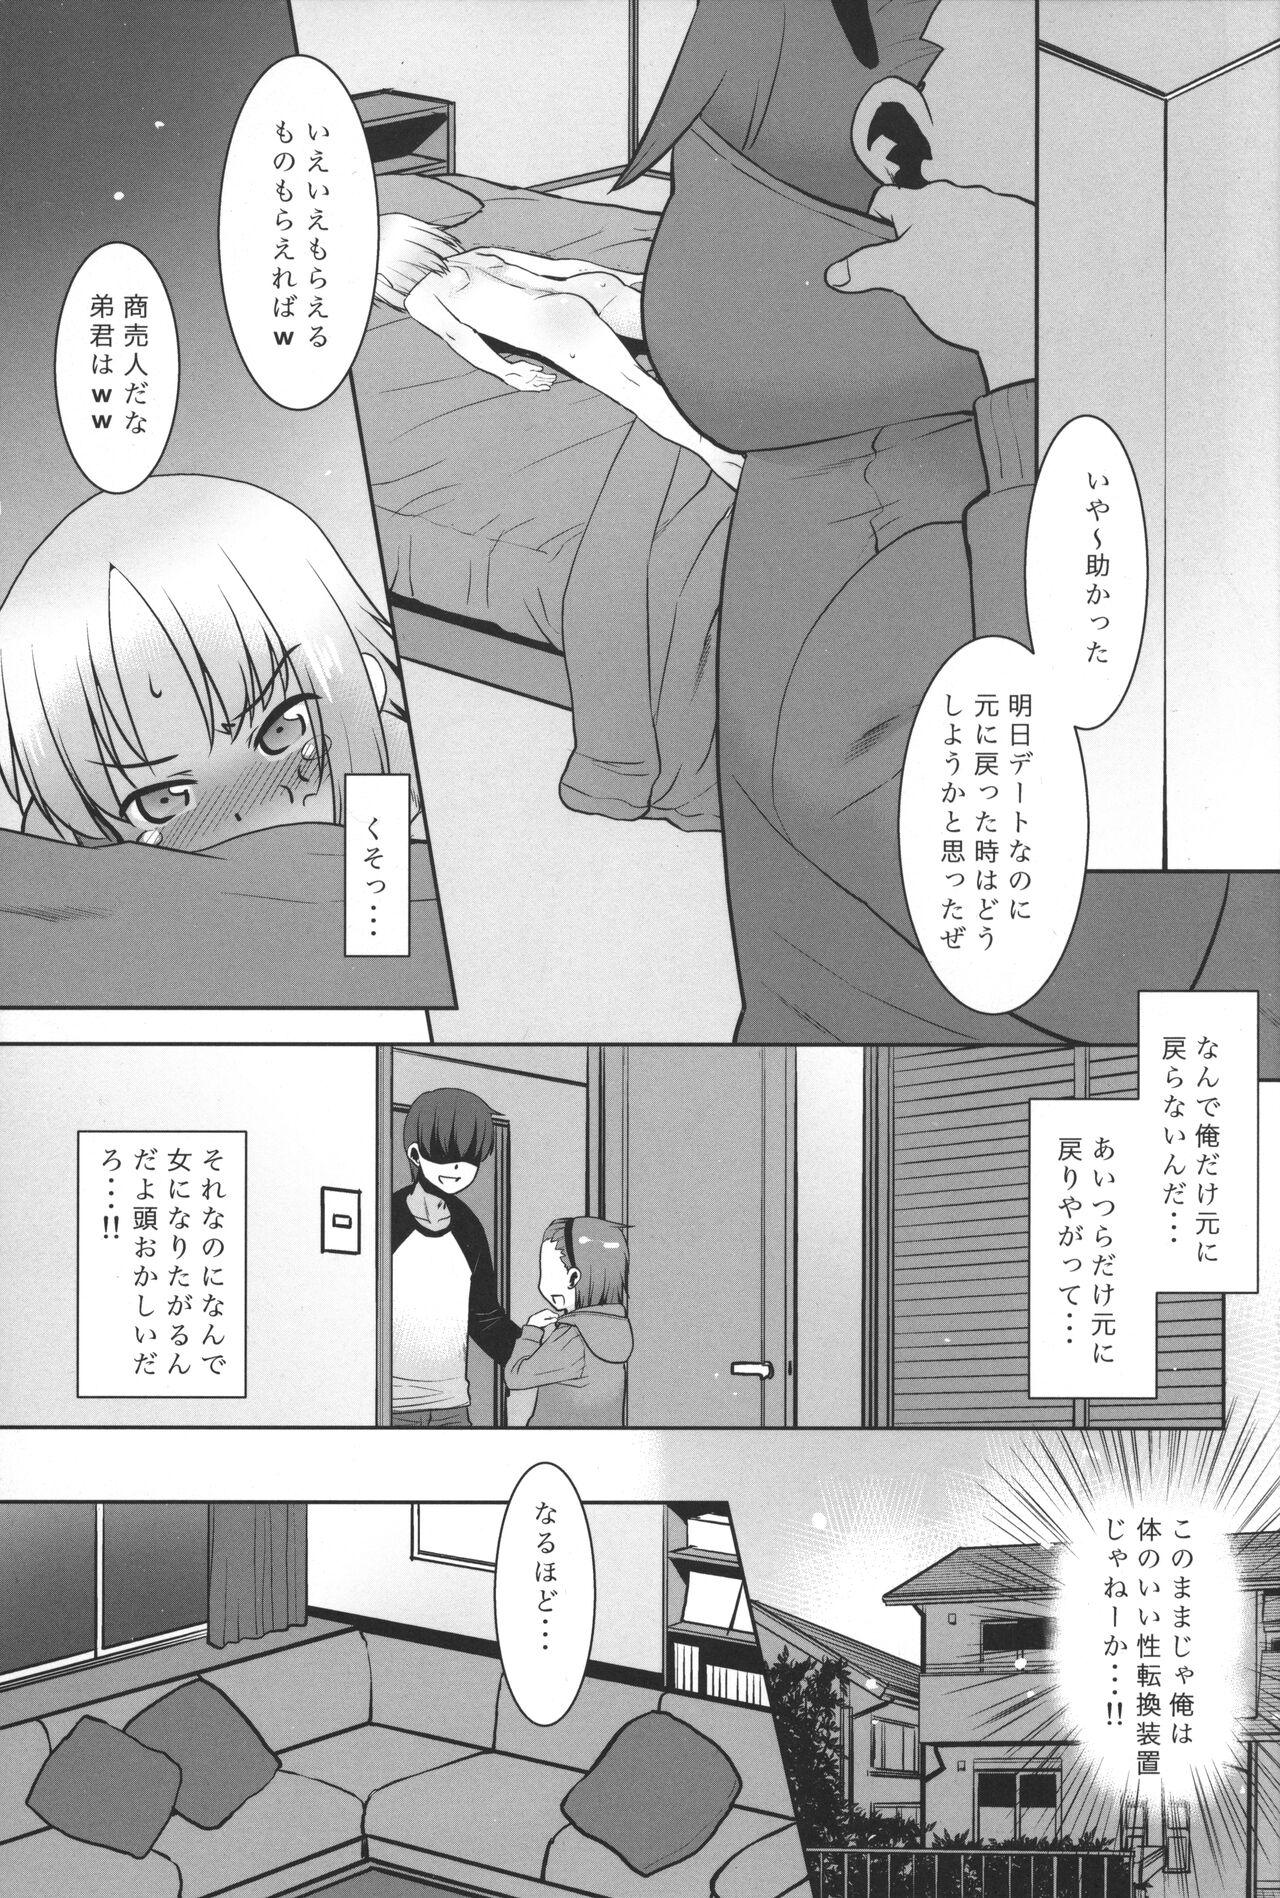 Butt Uchi no Aniki ga Onna no ko ni natta kara Minna de Mawasou ze! 2 - Original Gaypawn - Page 4